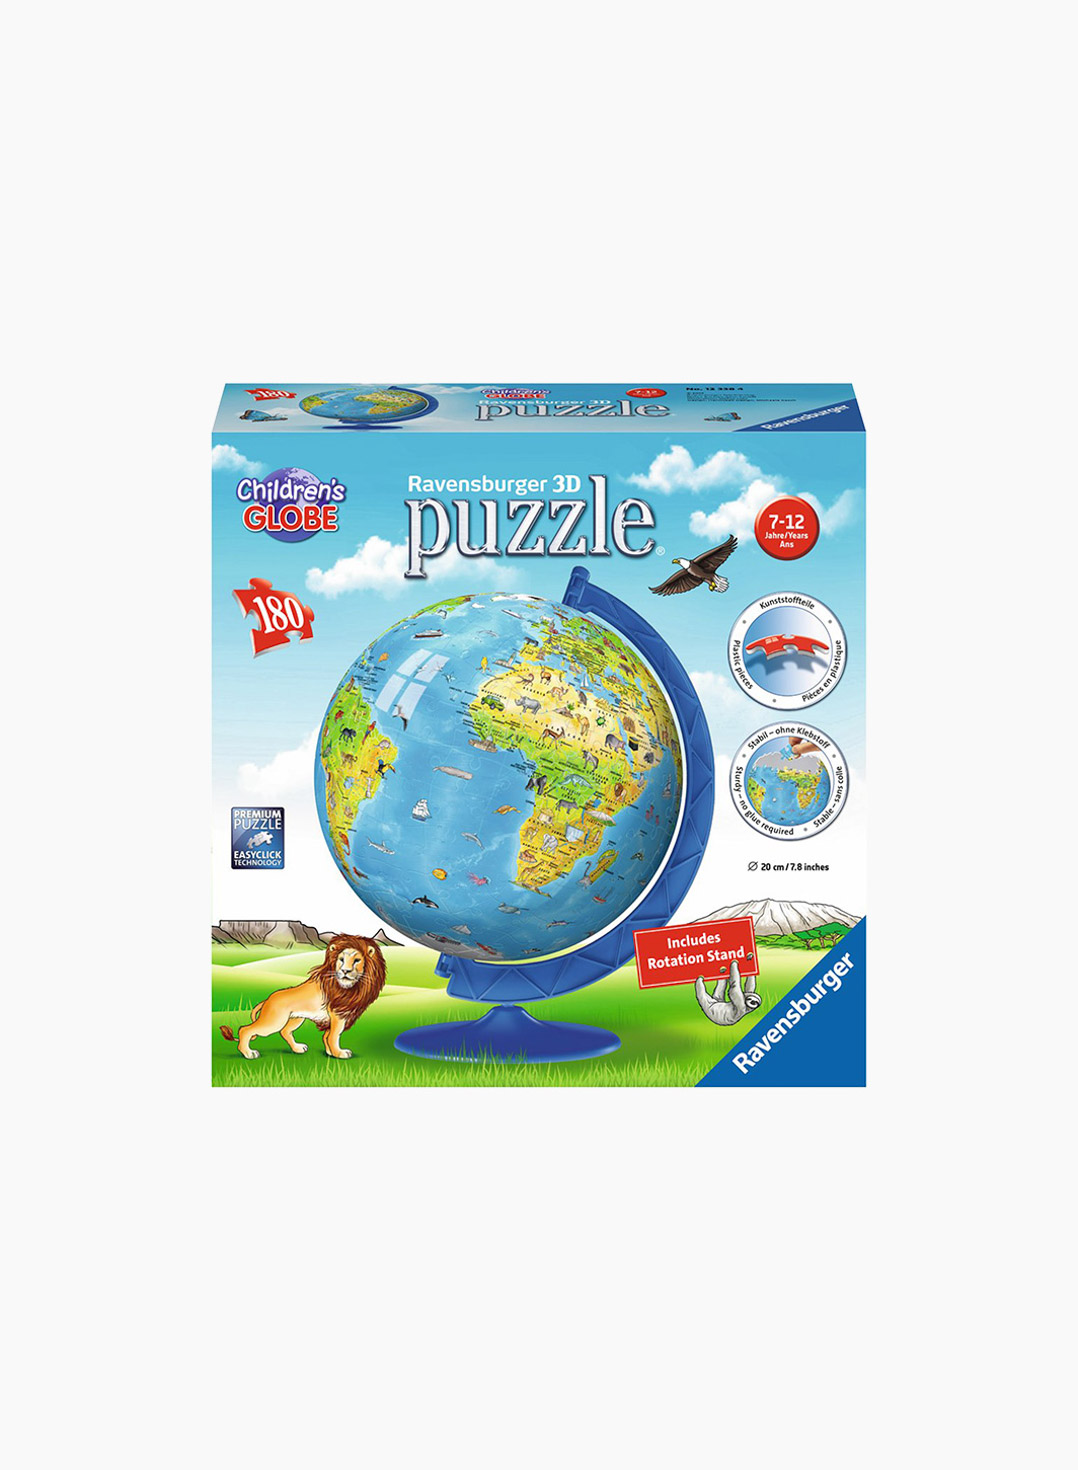 Ravensburger 3D Puzzle Children‘s Globe 180p